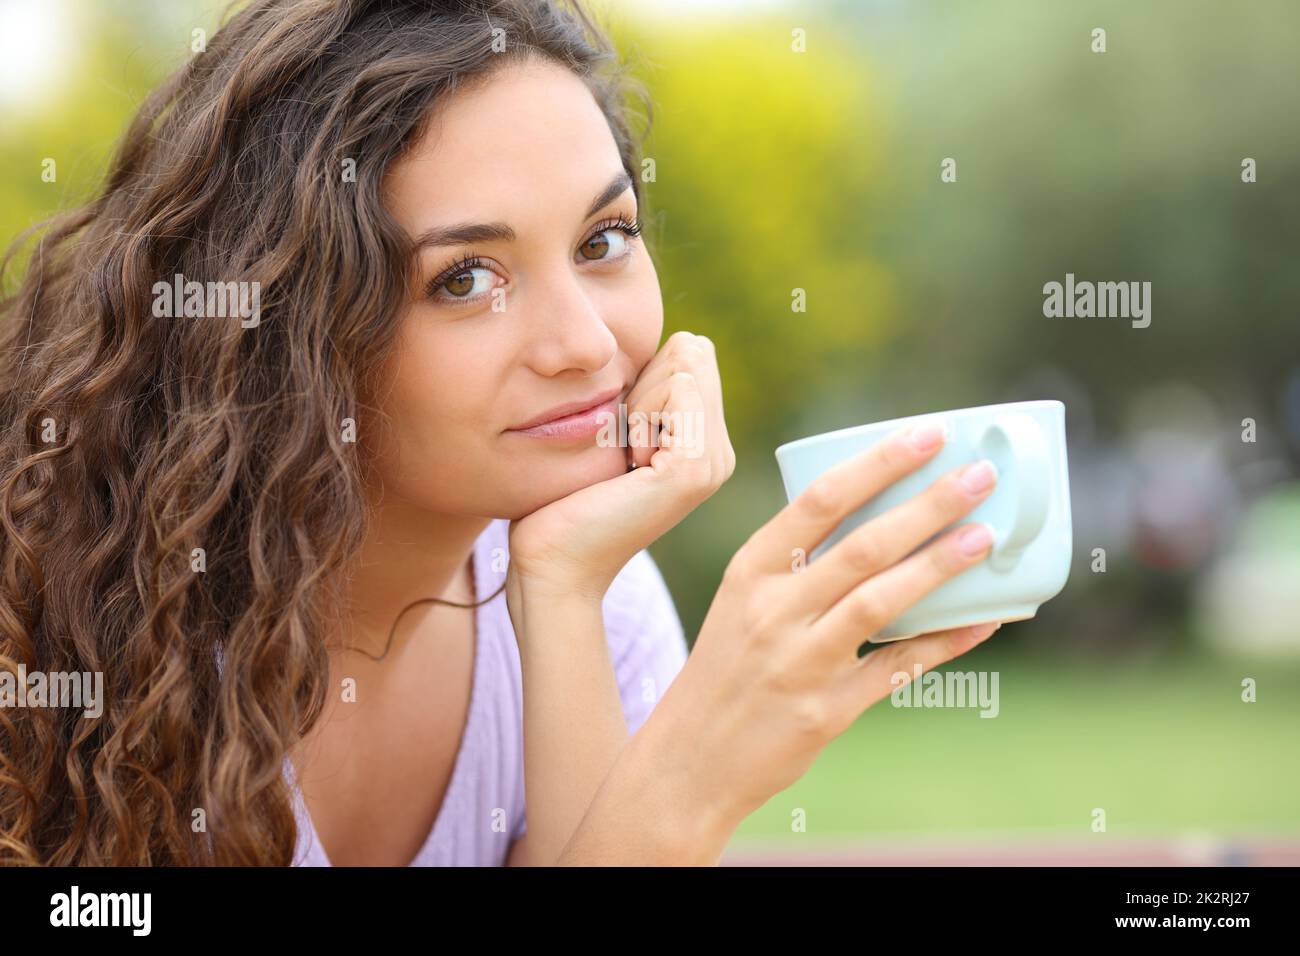 Une femme confiante regarde l'appareil photo qui tient une tasse à café Banque D'Images